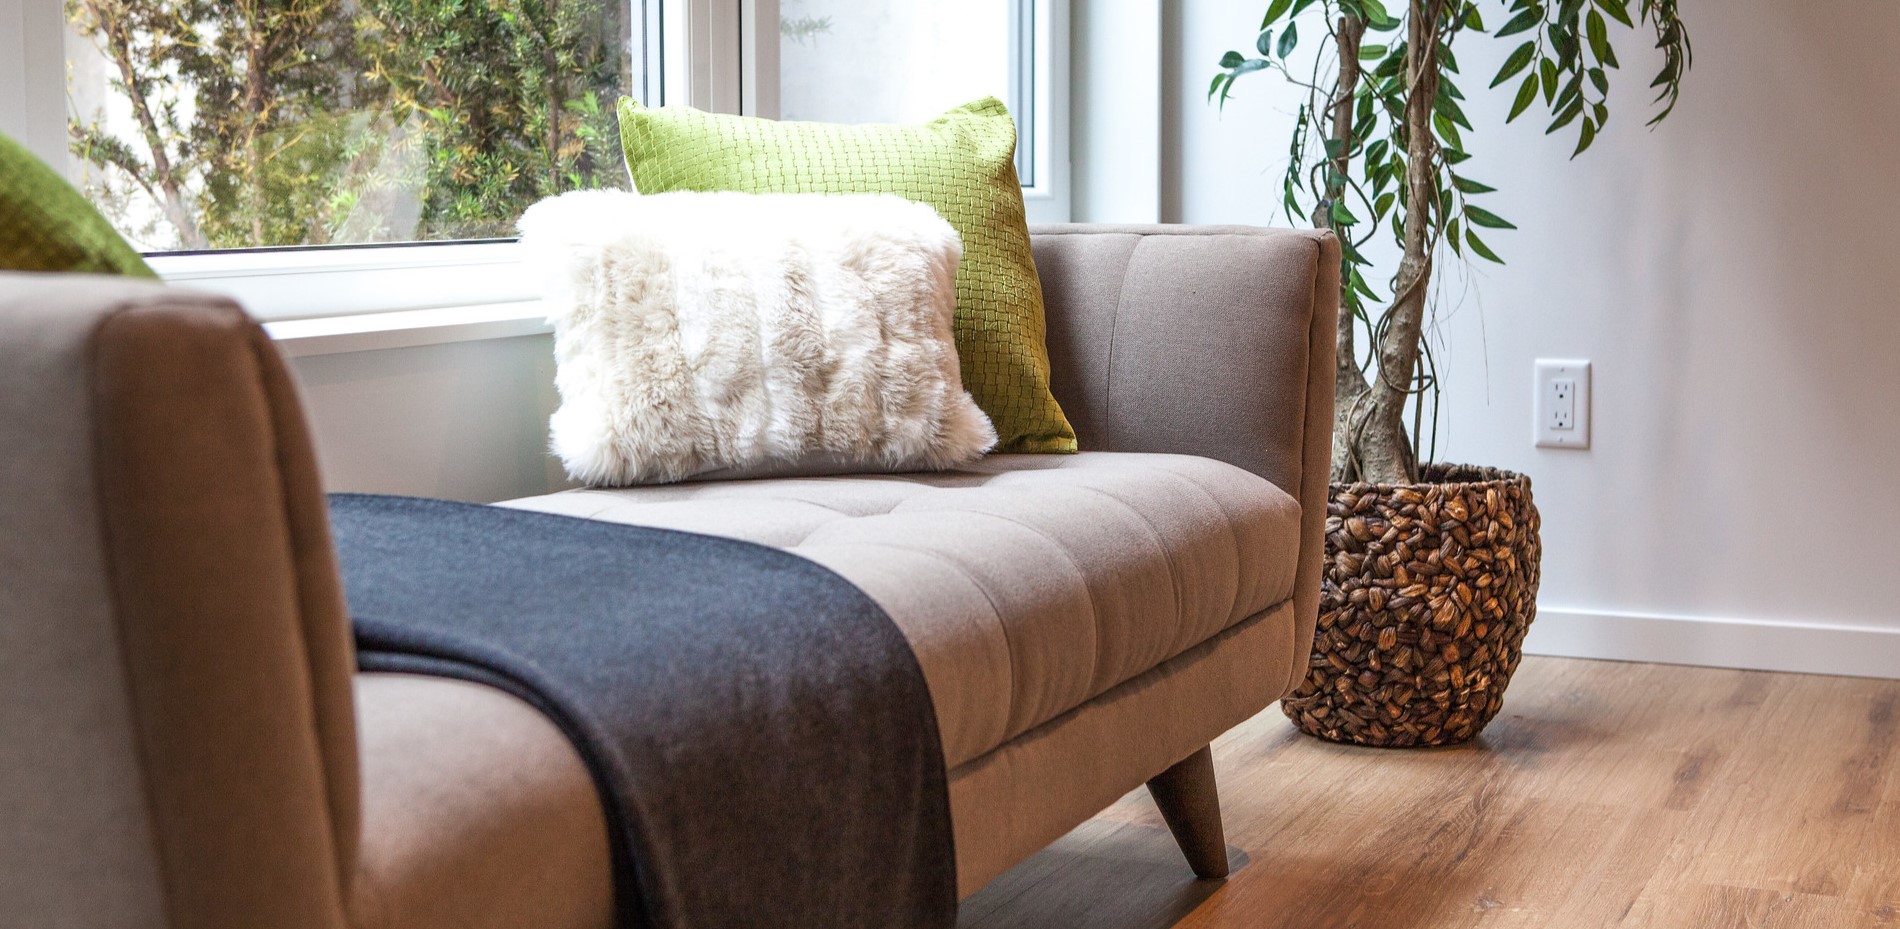 Для создания уютной атмосферы в переговорной можно декорировать диван пледом и подушками